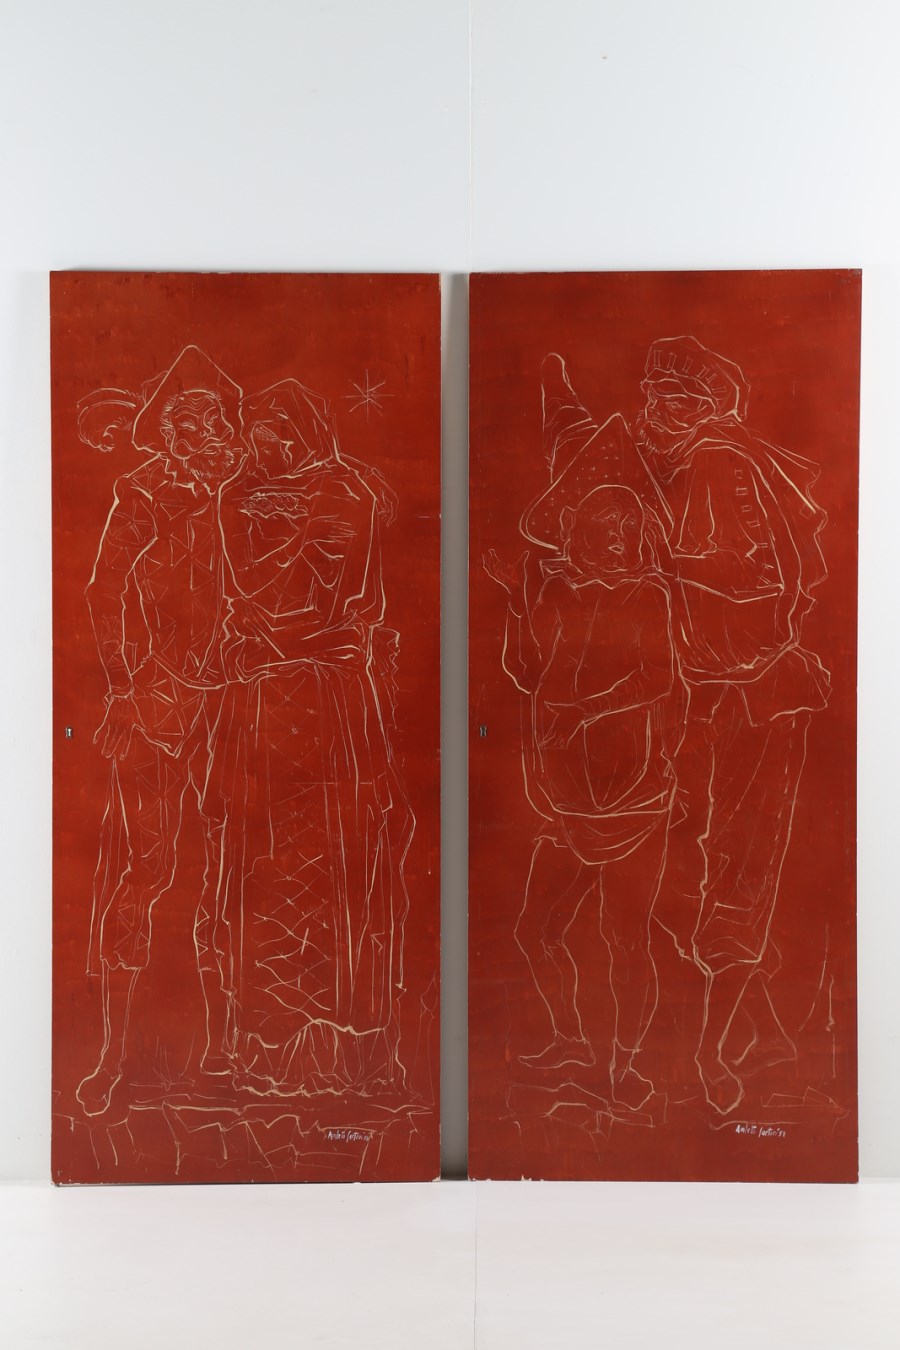 Pannelli in legno laccato, dipinti a figure della commedia dell'arte Veneziana, anni 50 (Amleto Sartori)